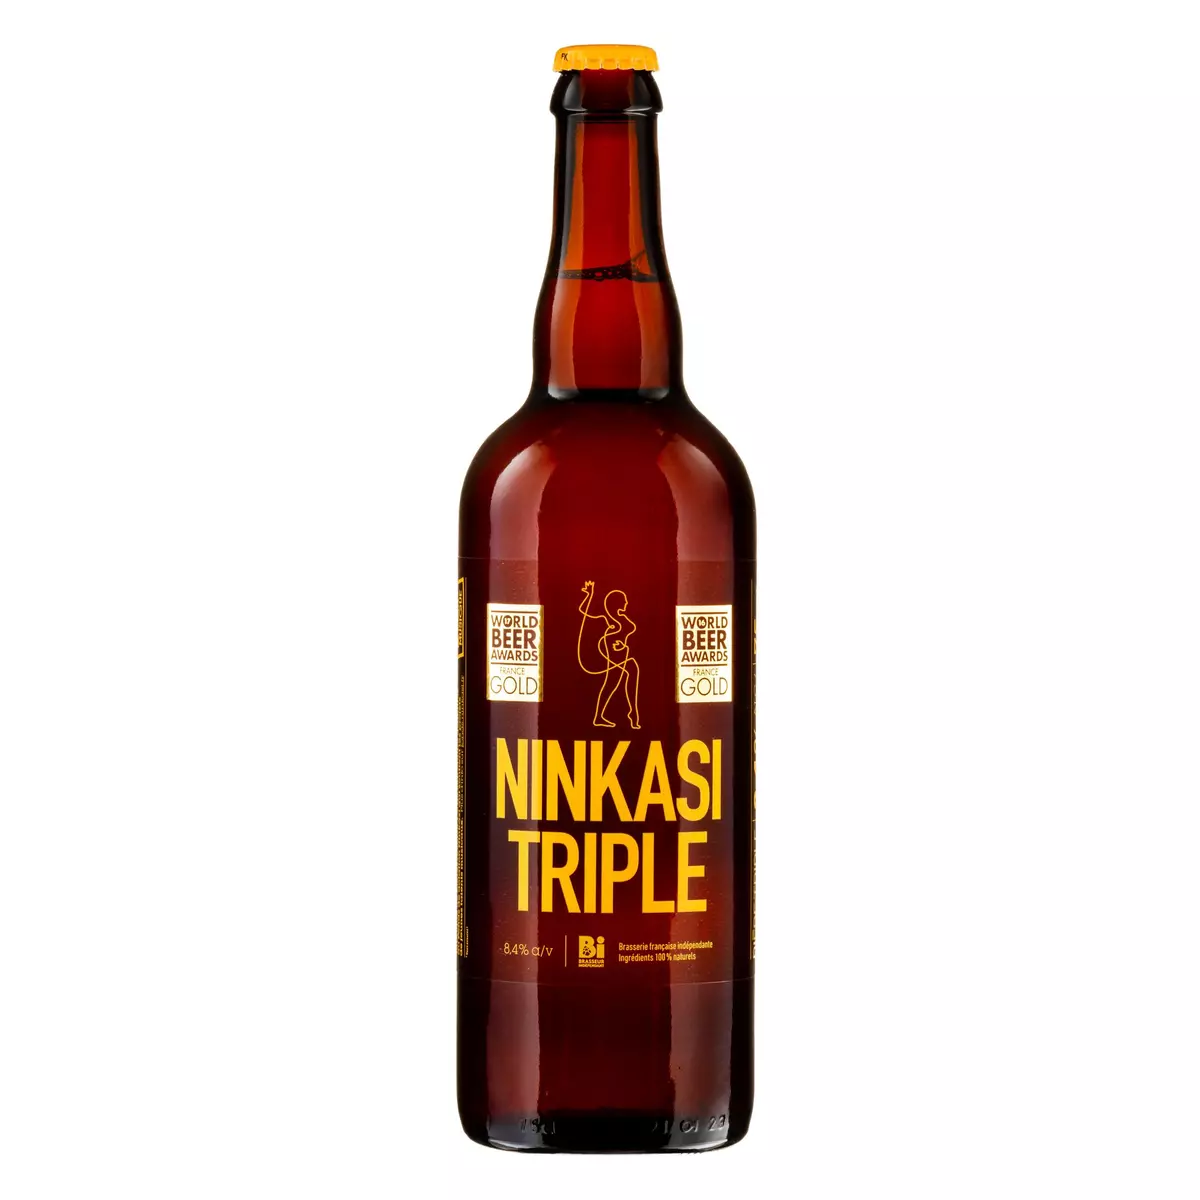 NINKASI Bière blonde triple artisanale de Lyon 8,4% 75cl